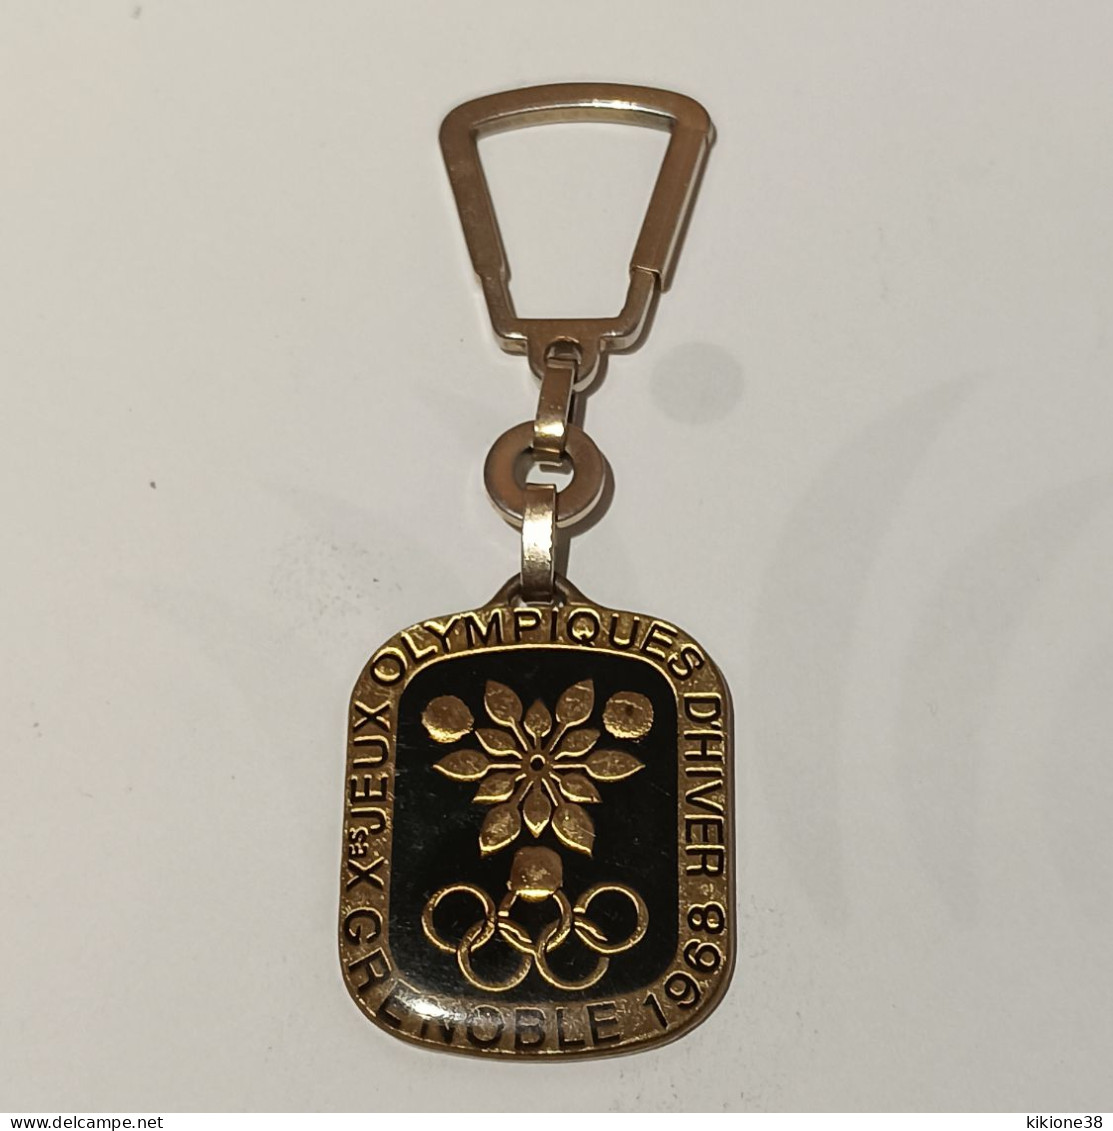 Très Rare Porte Clé Des Jeux Olympiques De Grenoble 68 Fond Noir Sous Résine. Objet Souvenir, Médaille, Badge, Pin's. - Kleding, Souvenirs & Andere